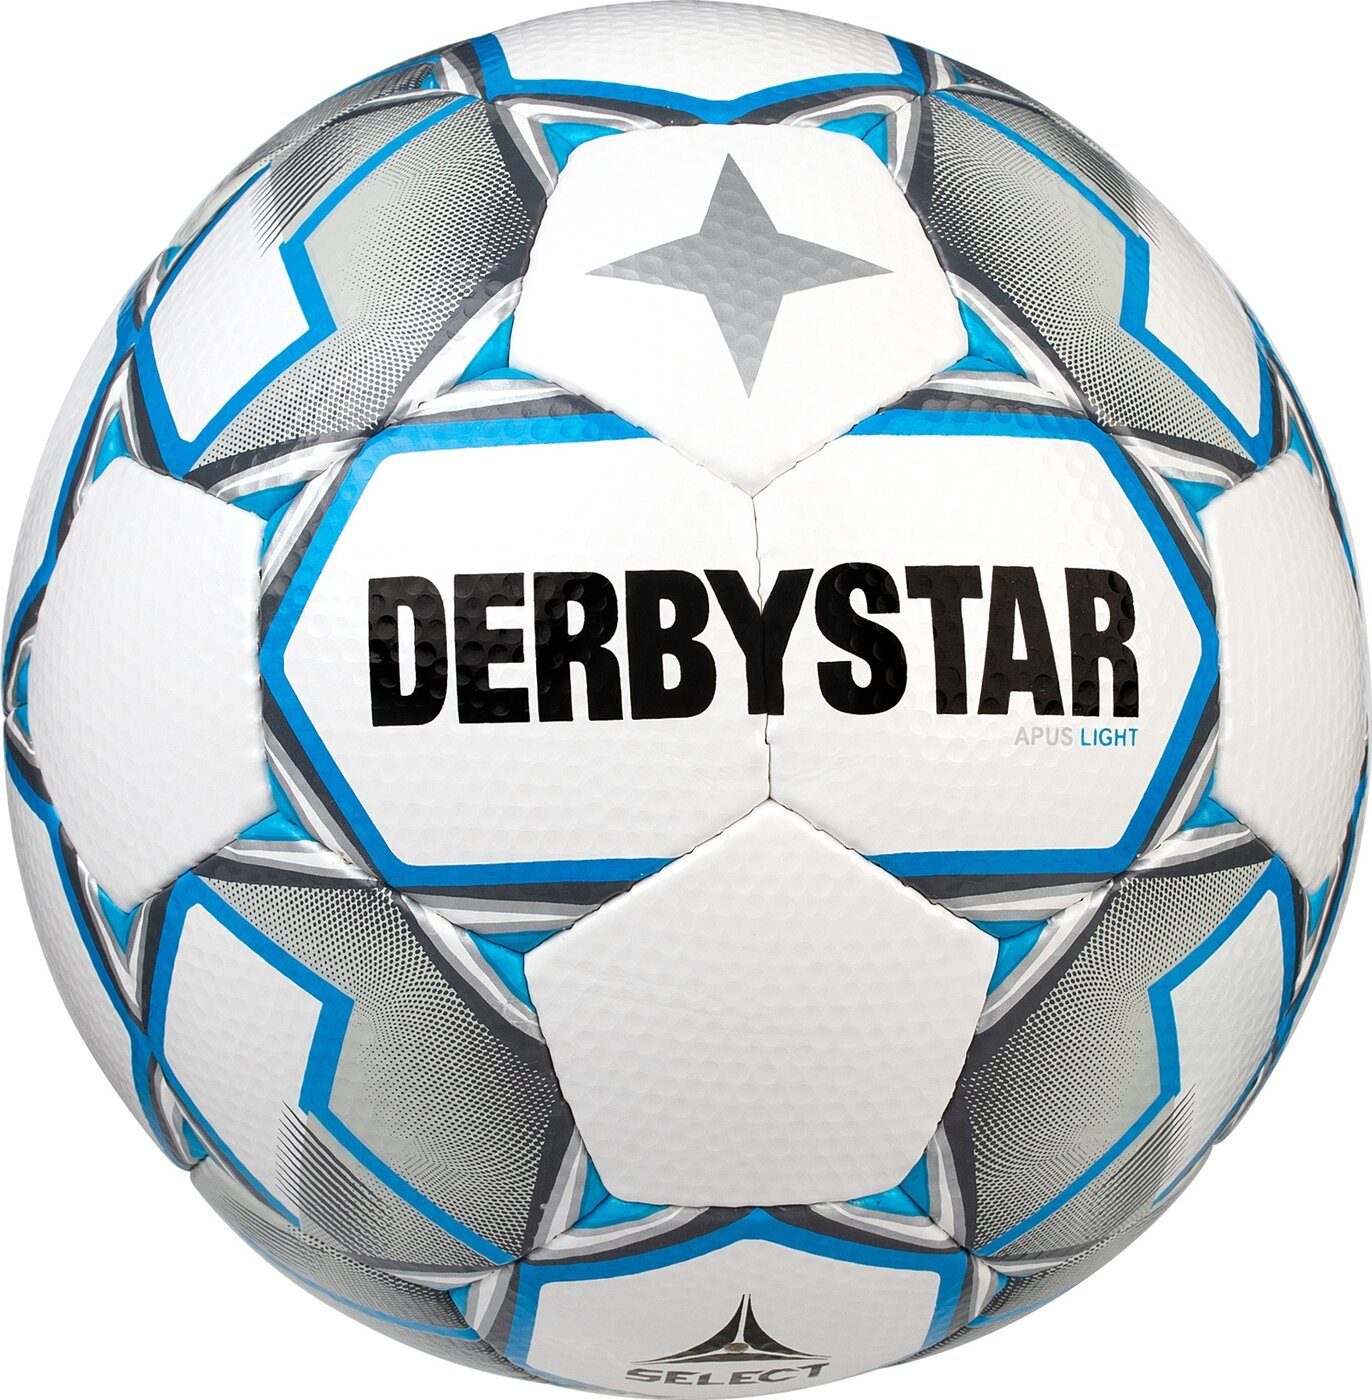 Derbystar Fußball Light V20 WEIß Apus GRAU BLAU